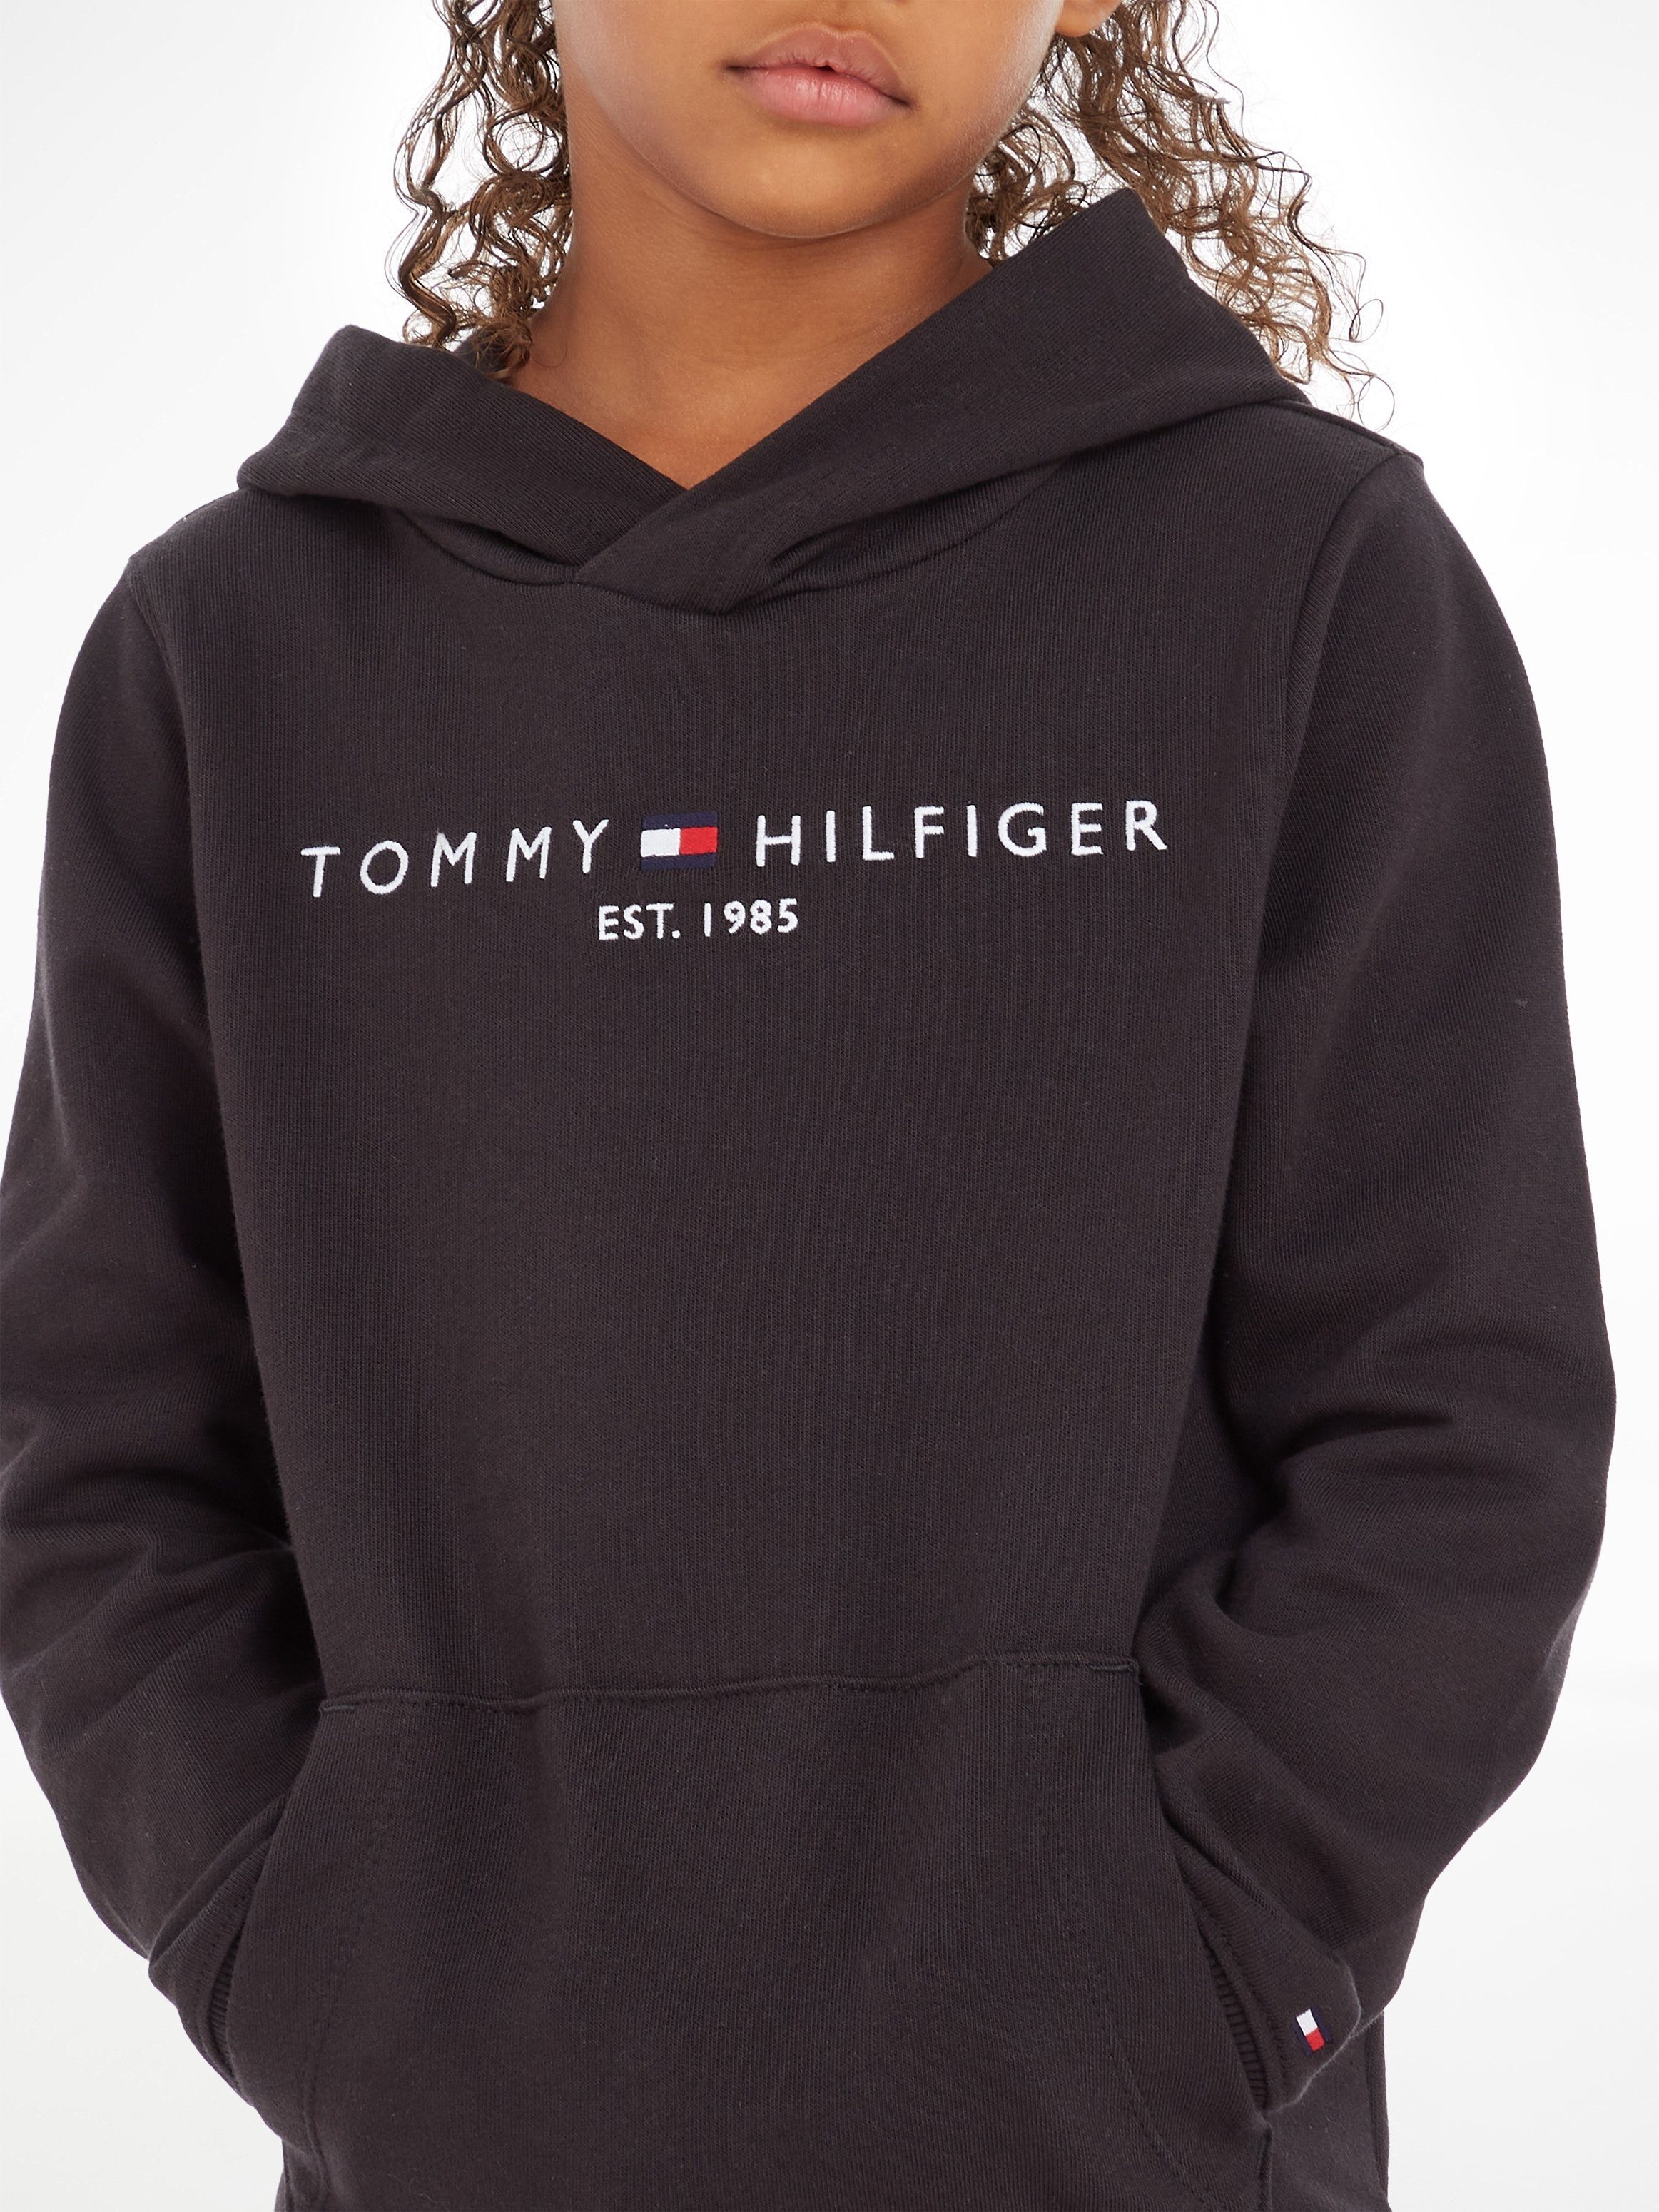 Tommy Hilfiger Kapuzensweatshirt ESSENTIAL HOODIE Mädchen Junior und Kinder Jungen Kids MiniMe,für